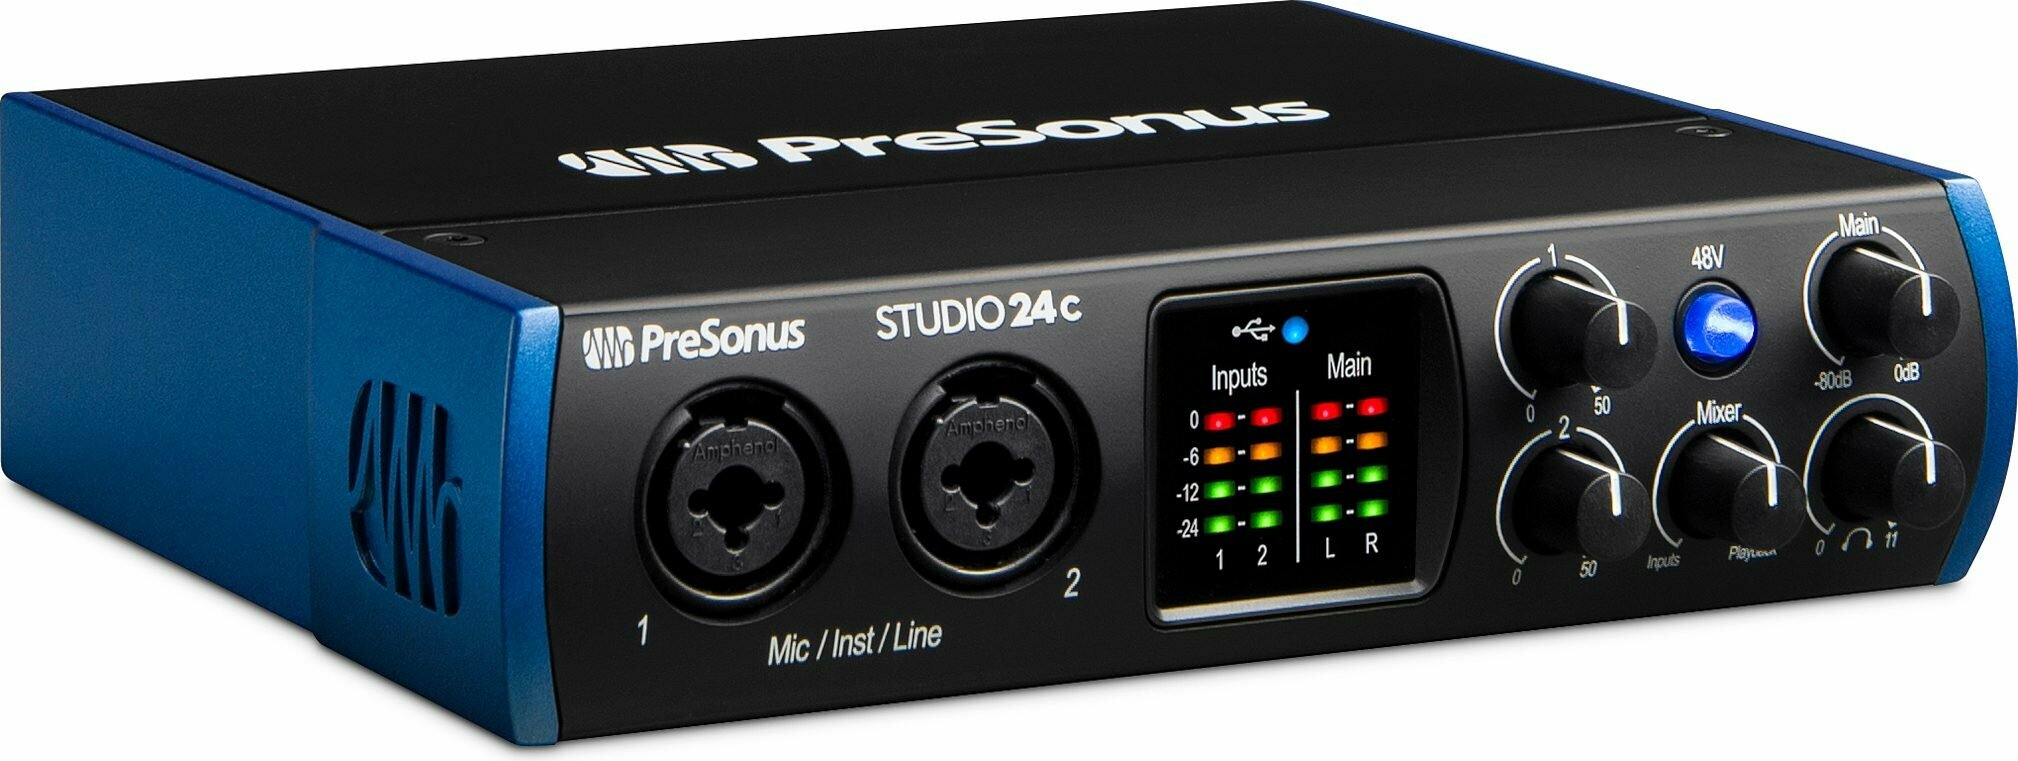 Внешняя звуковая карта PreSonus Studio 24c